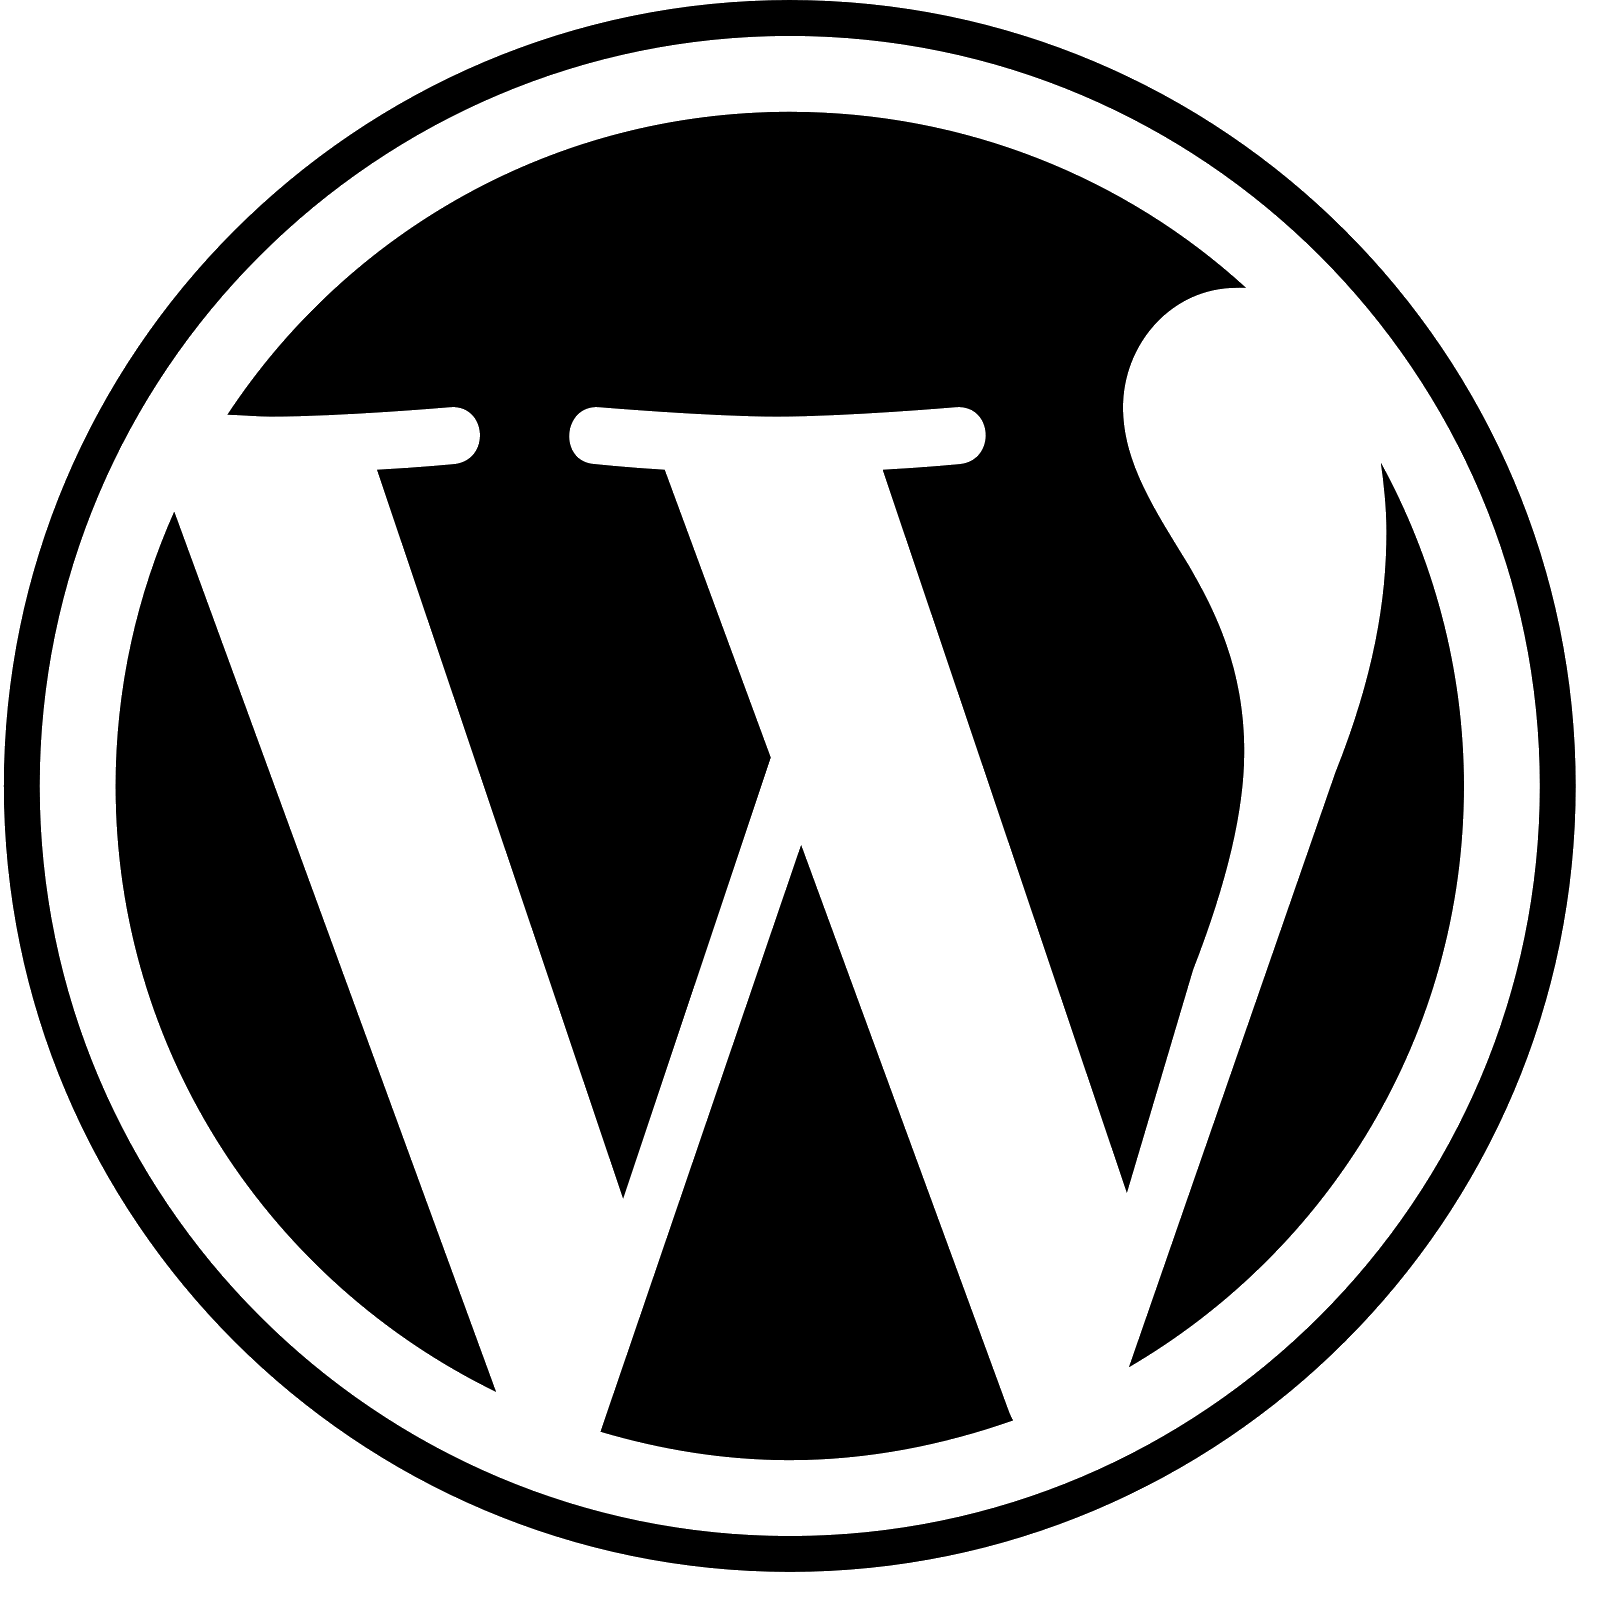 File:WordPress logo.svg - Wikimedia Commons